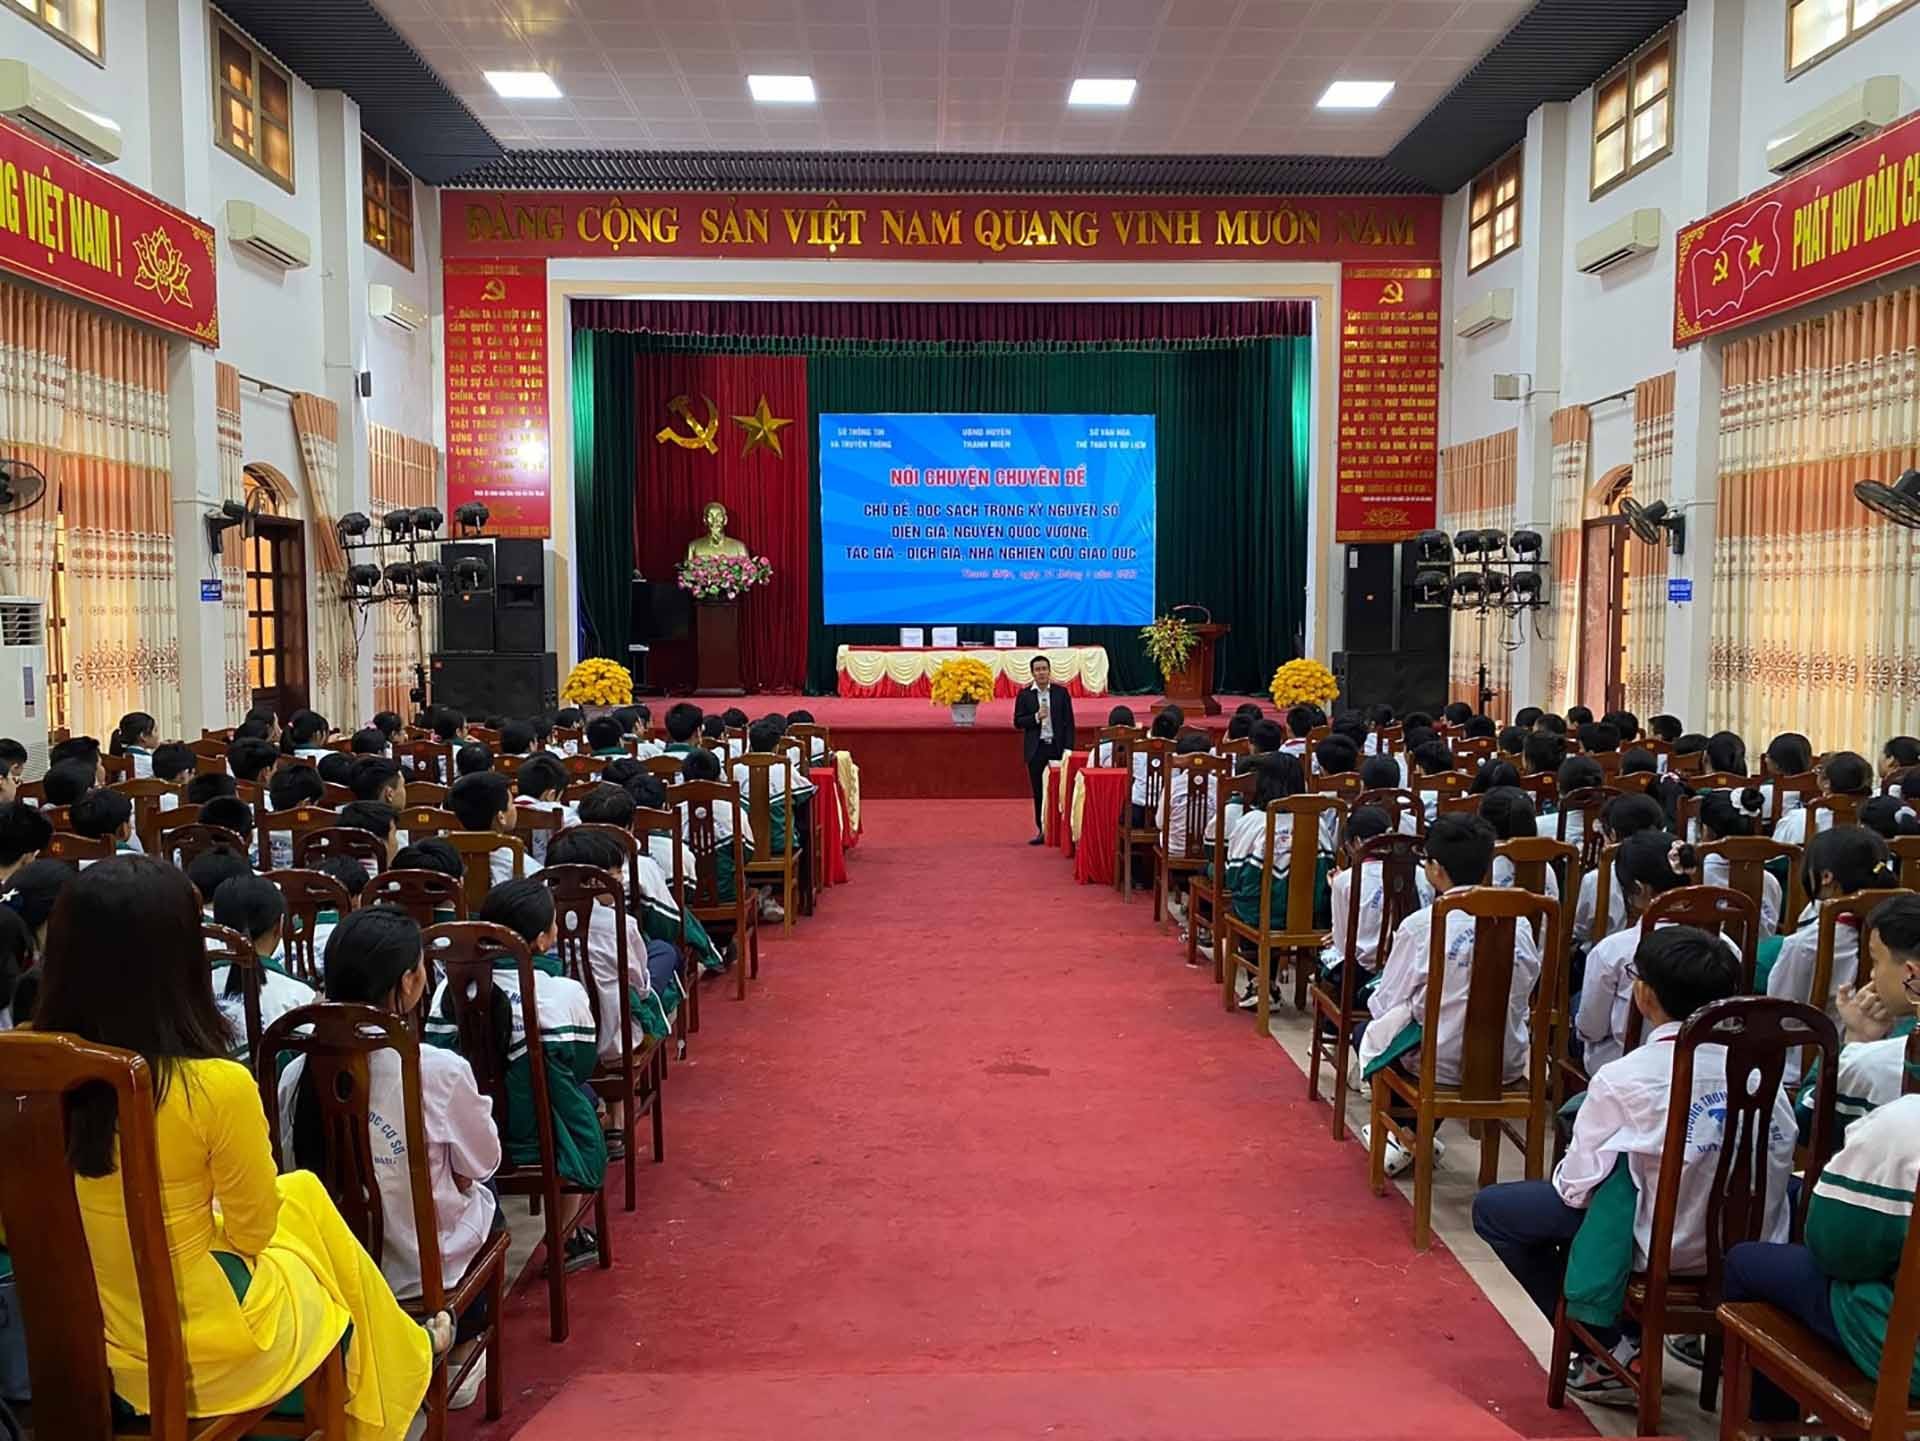 Các bạn học sinh tham gia nói chuyện chuyên đề, chủ đề “đọc sách trong kỷ nguyên số” của diễn giả Nguyễn Quốc Vương.